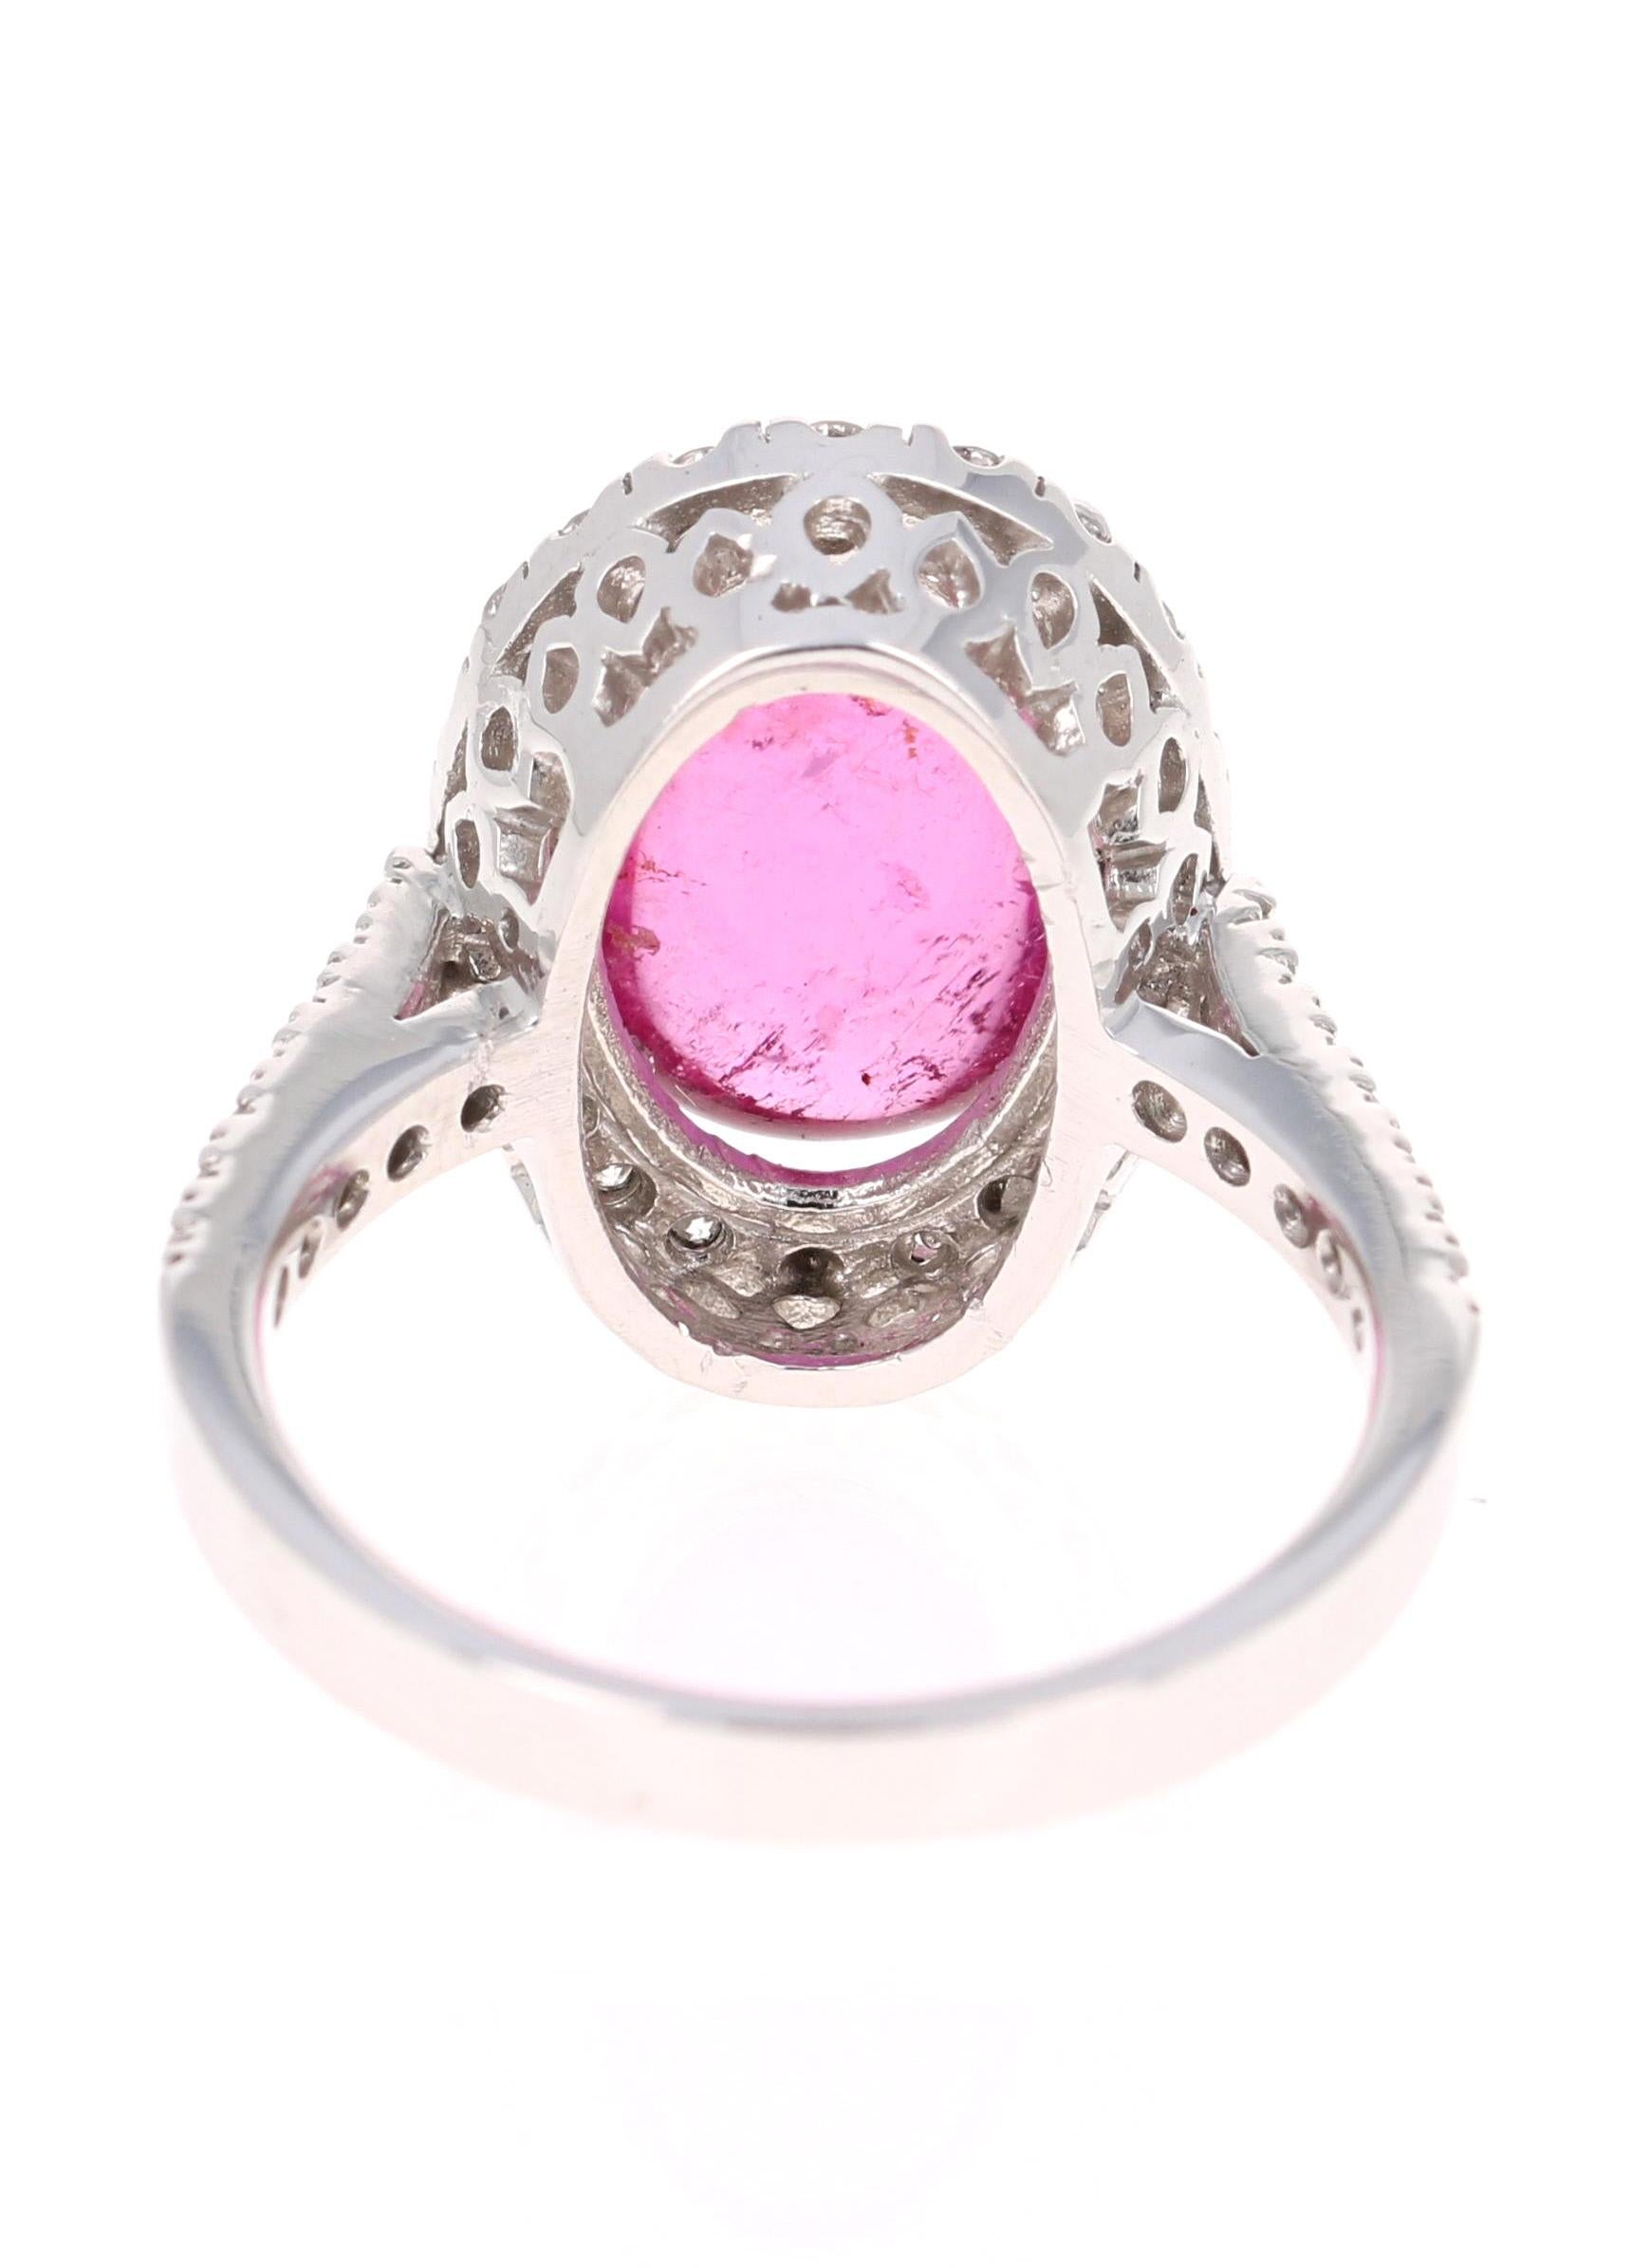 Oval Cut 6.72 Carat Pink Tourmaline Diamond 14 Karat White Gold Ring